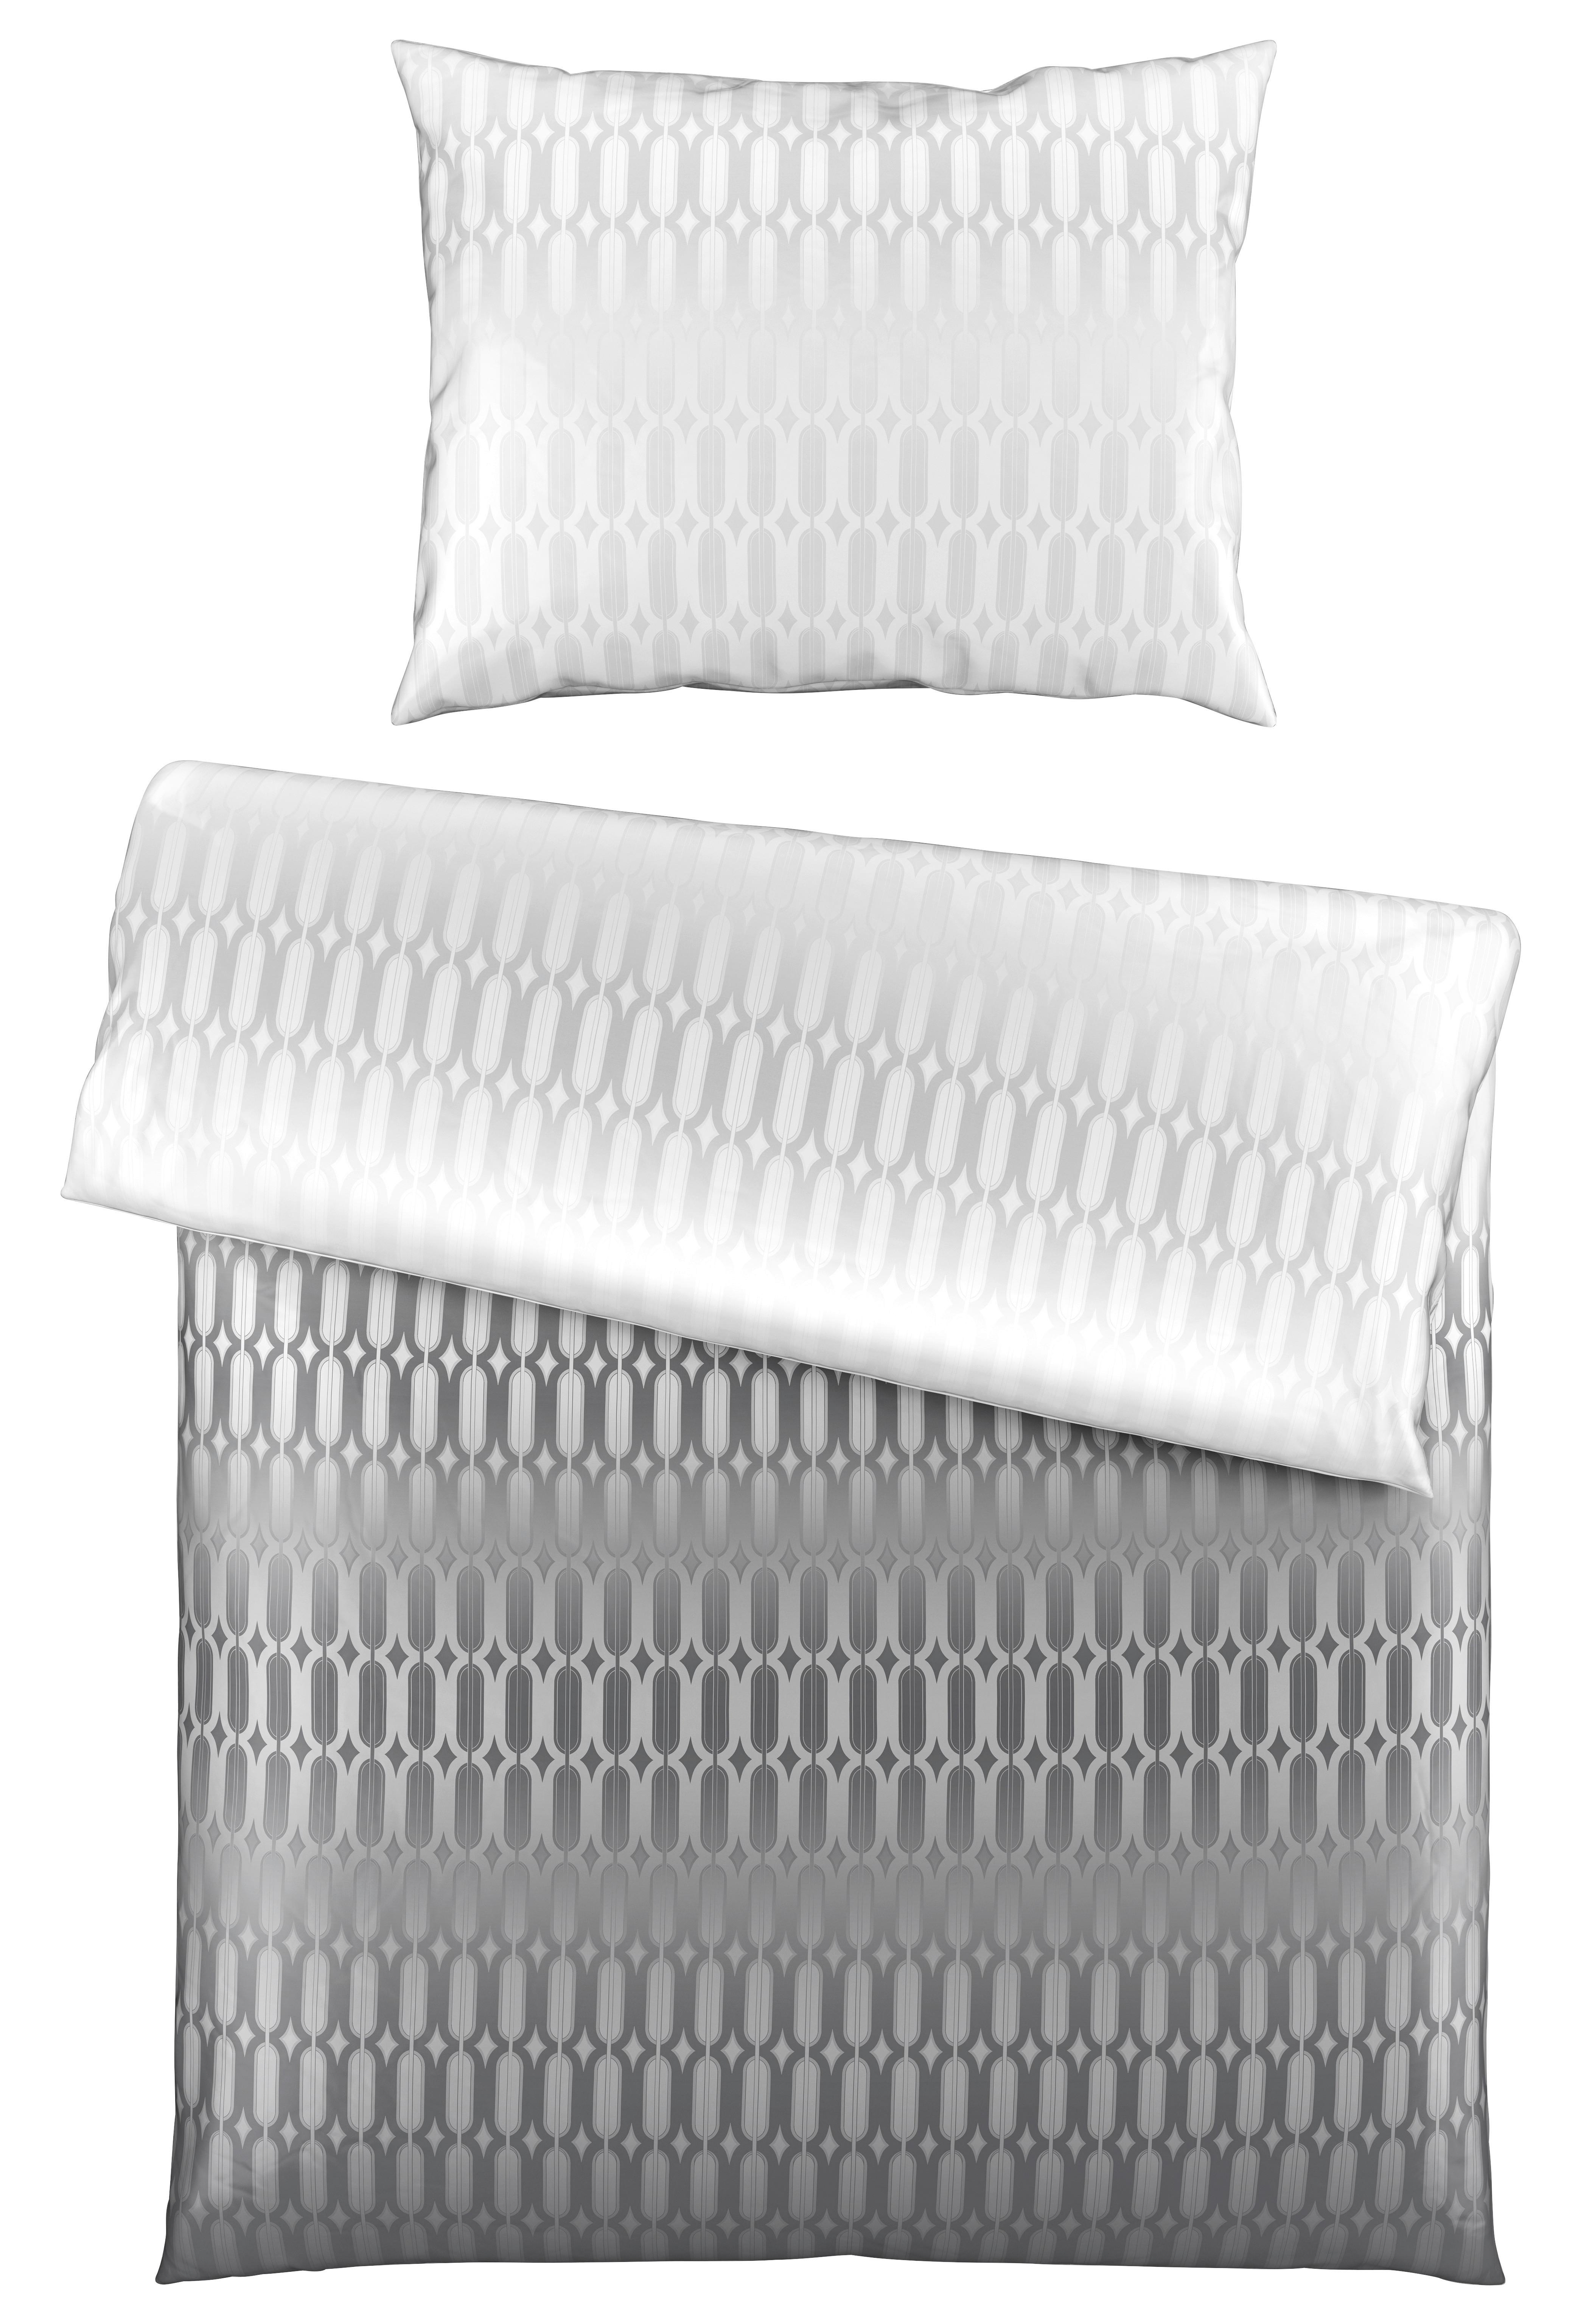 Posteljnina Picol - srebrne barve/siva, Moderno, tekstil (140/200cm) - Premium Living